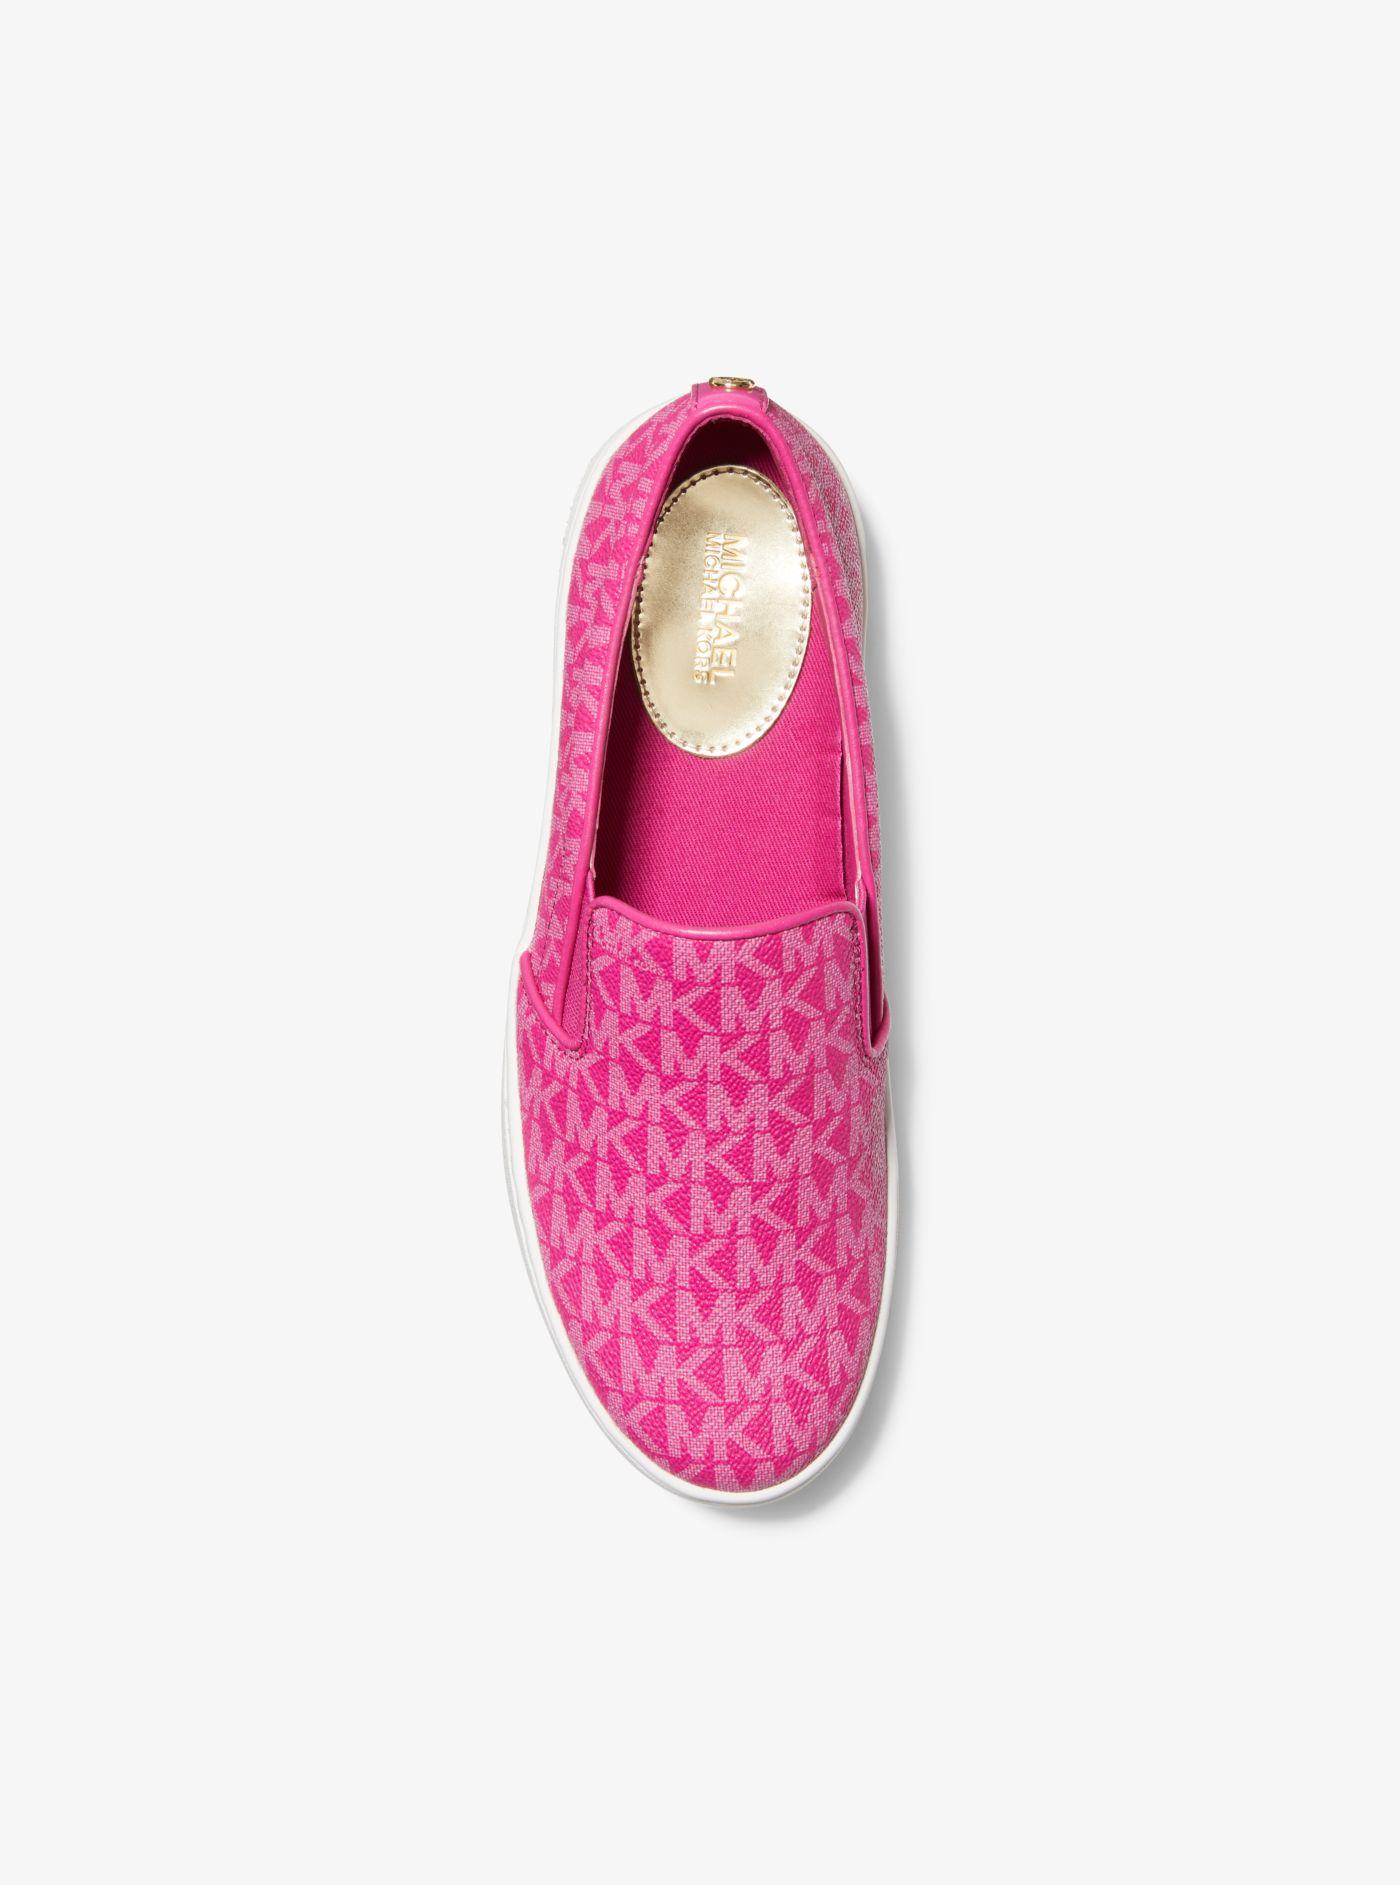 Michael Kors Trent Logo Slip-on Sneaker in Pink | Lyst